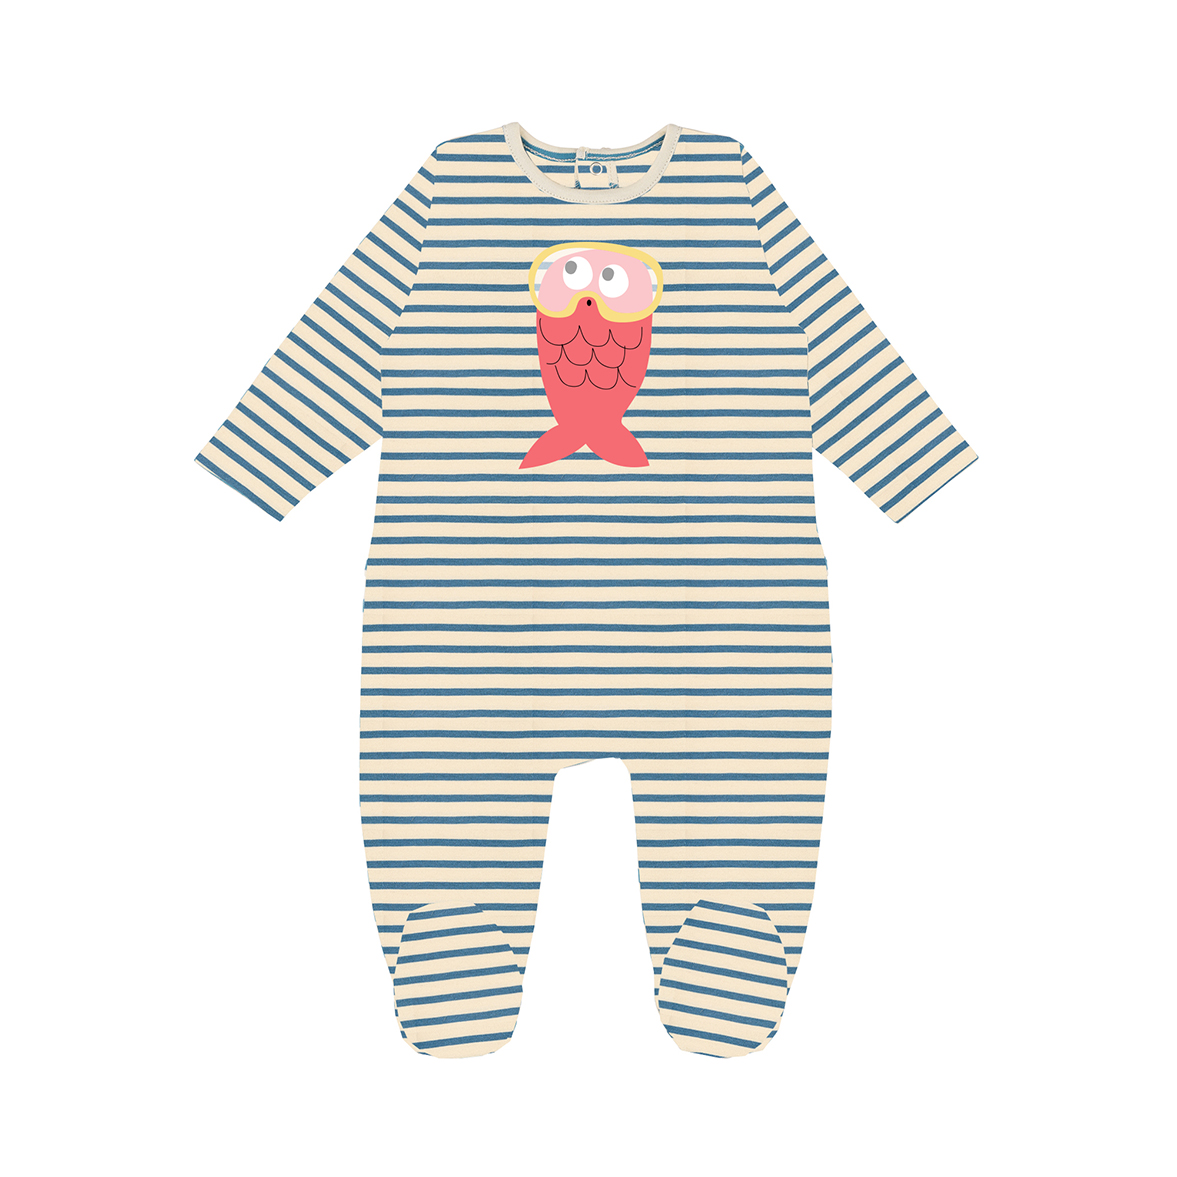 Pyjama bébé une pièce à fines rayures avec un poisson rose sérigrpahié devant